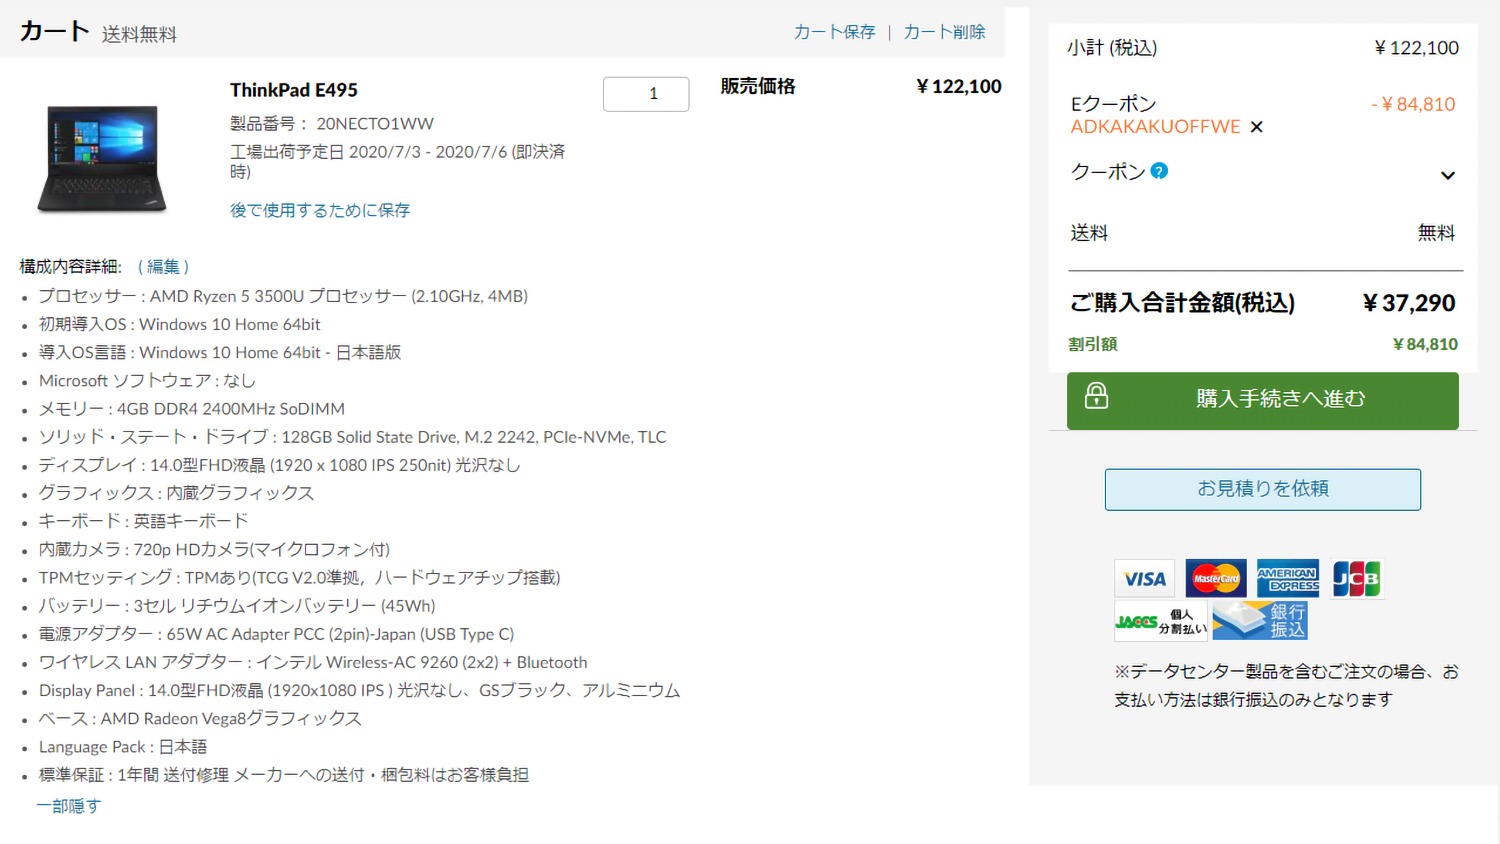 実質3万円以下でThinkPad E495を買った話